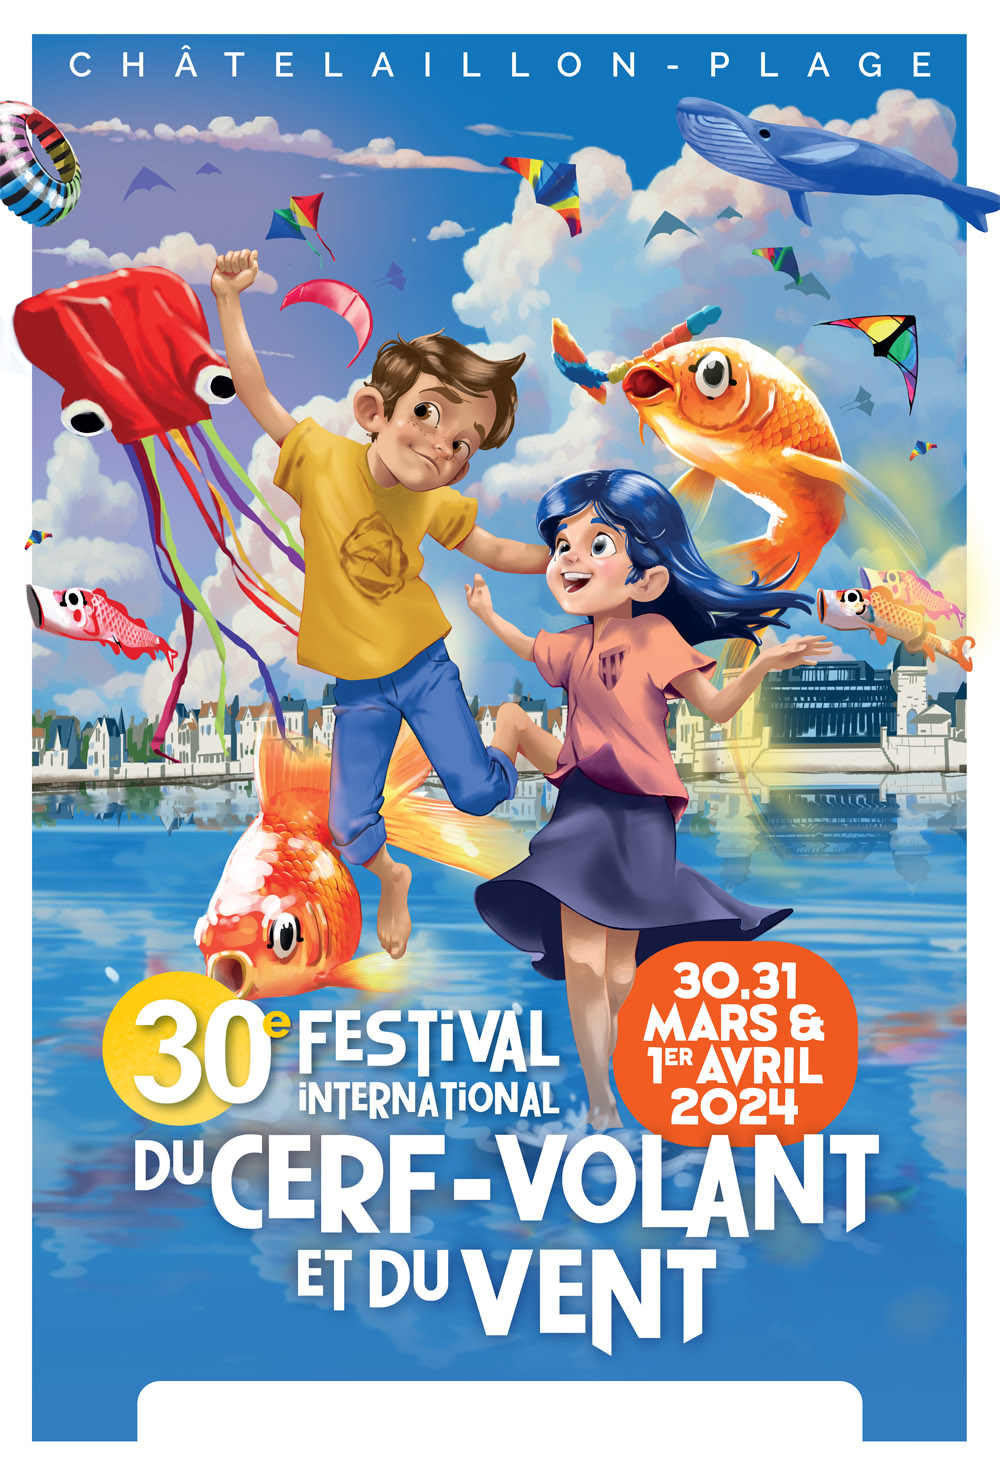 Le Festival du Cerf-Volant et du Vent